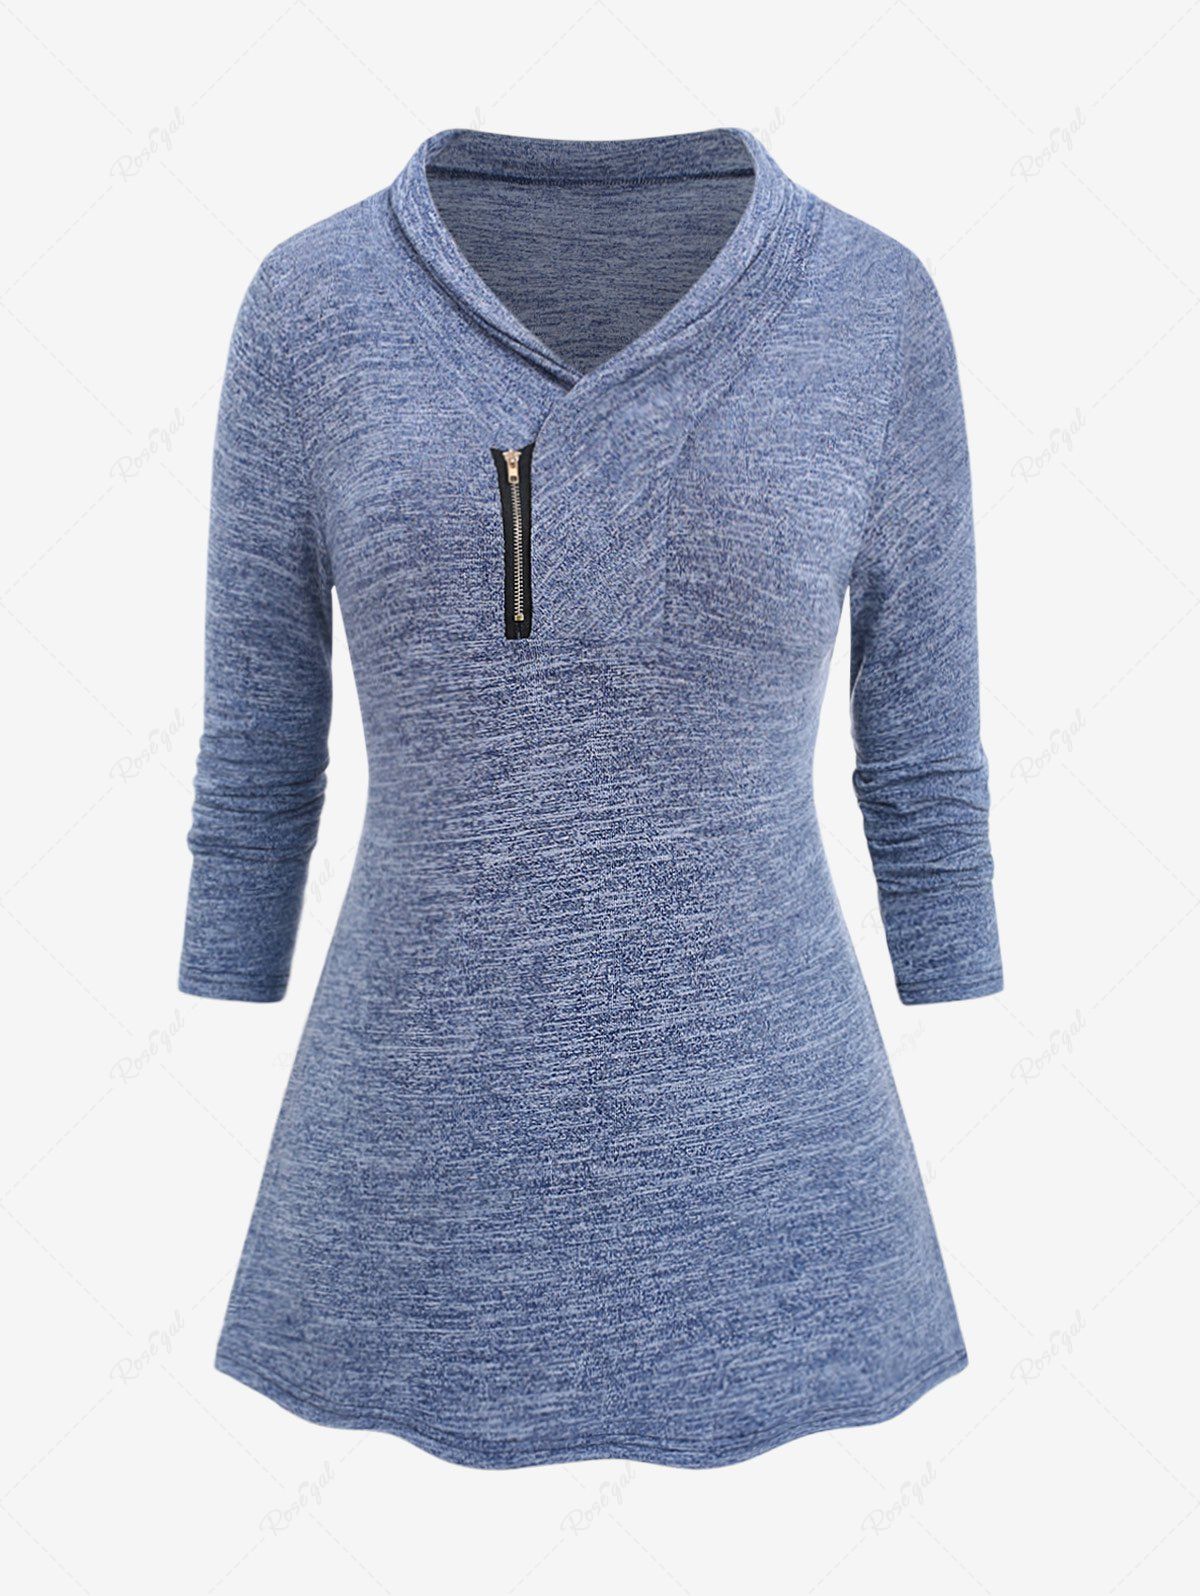 T-shirt Teinté Zippé de Grande Taille Bleu profond XL